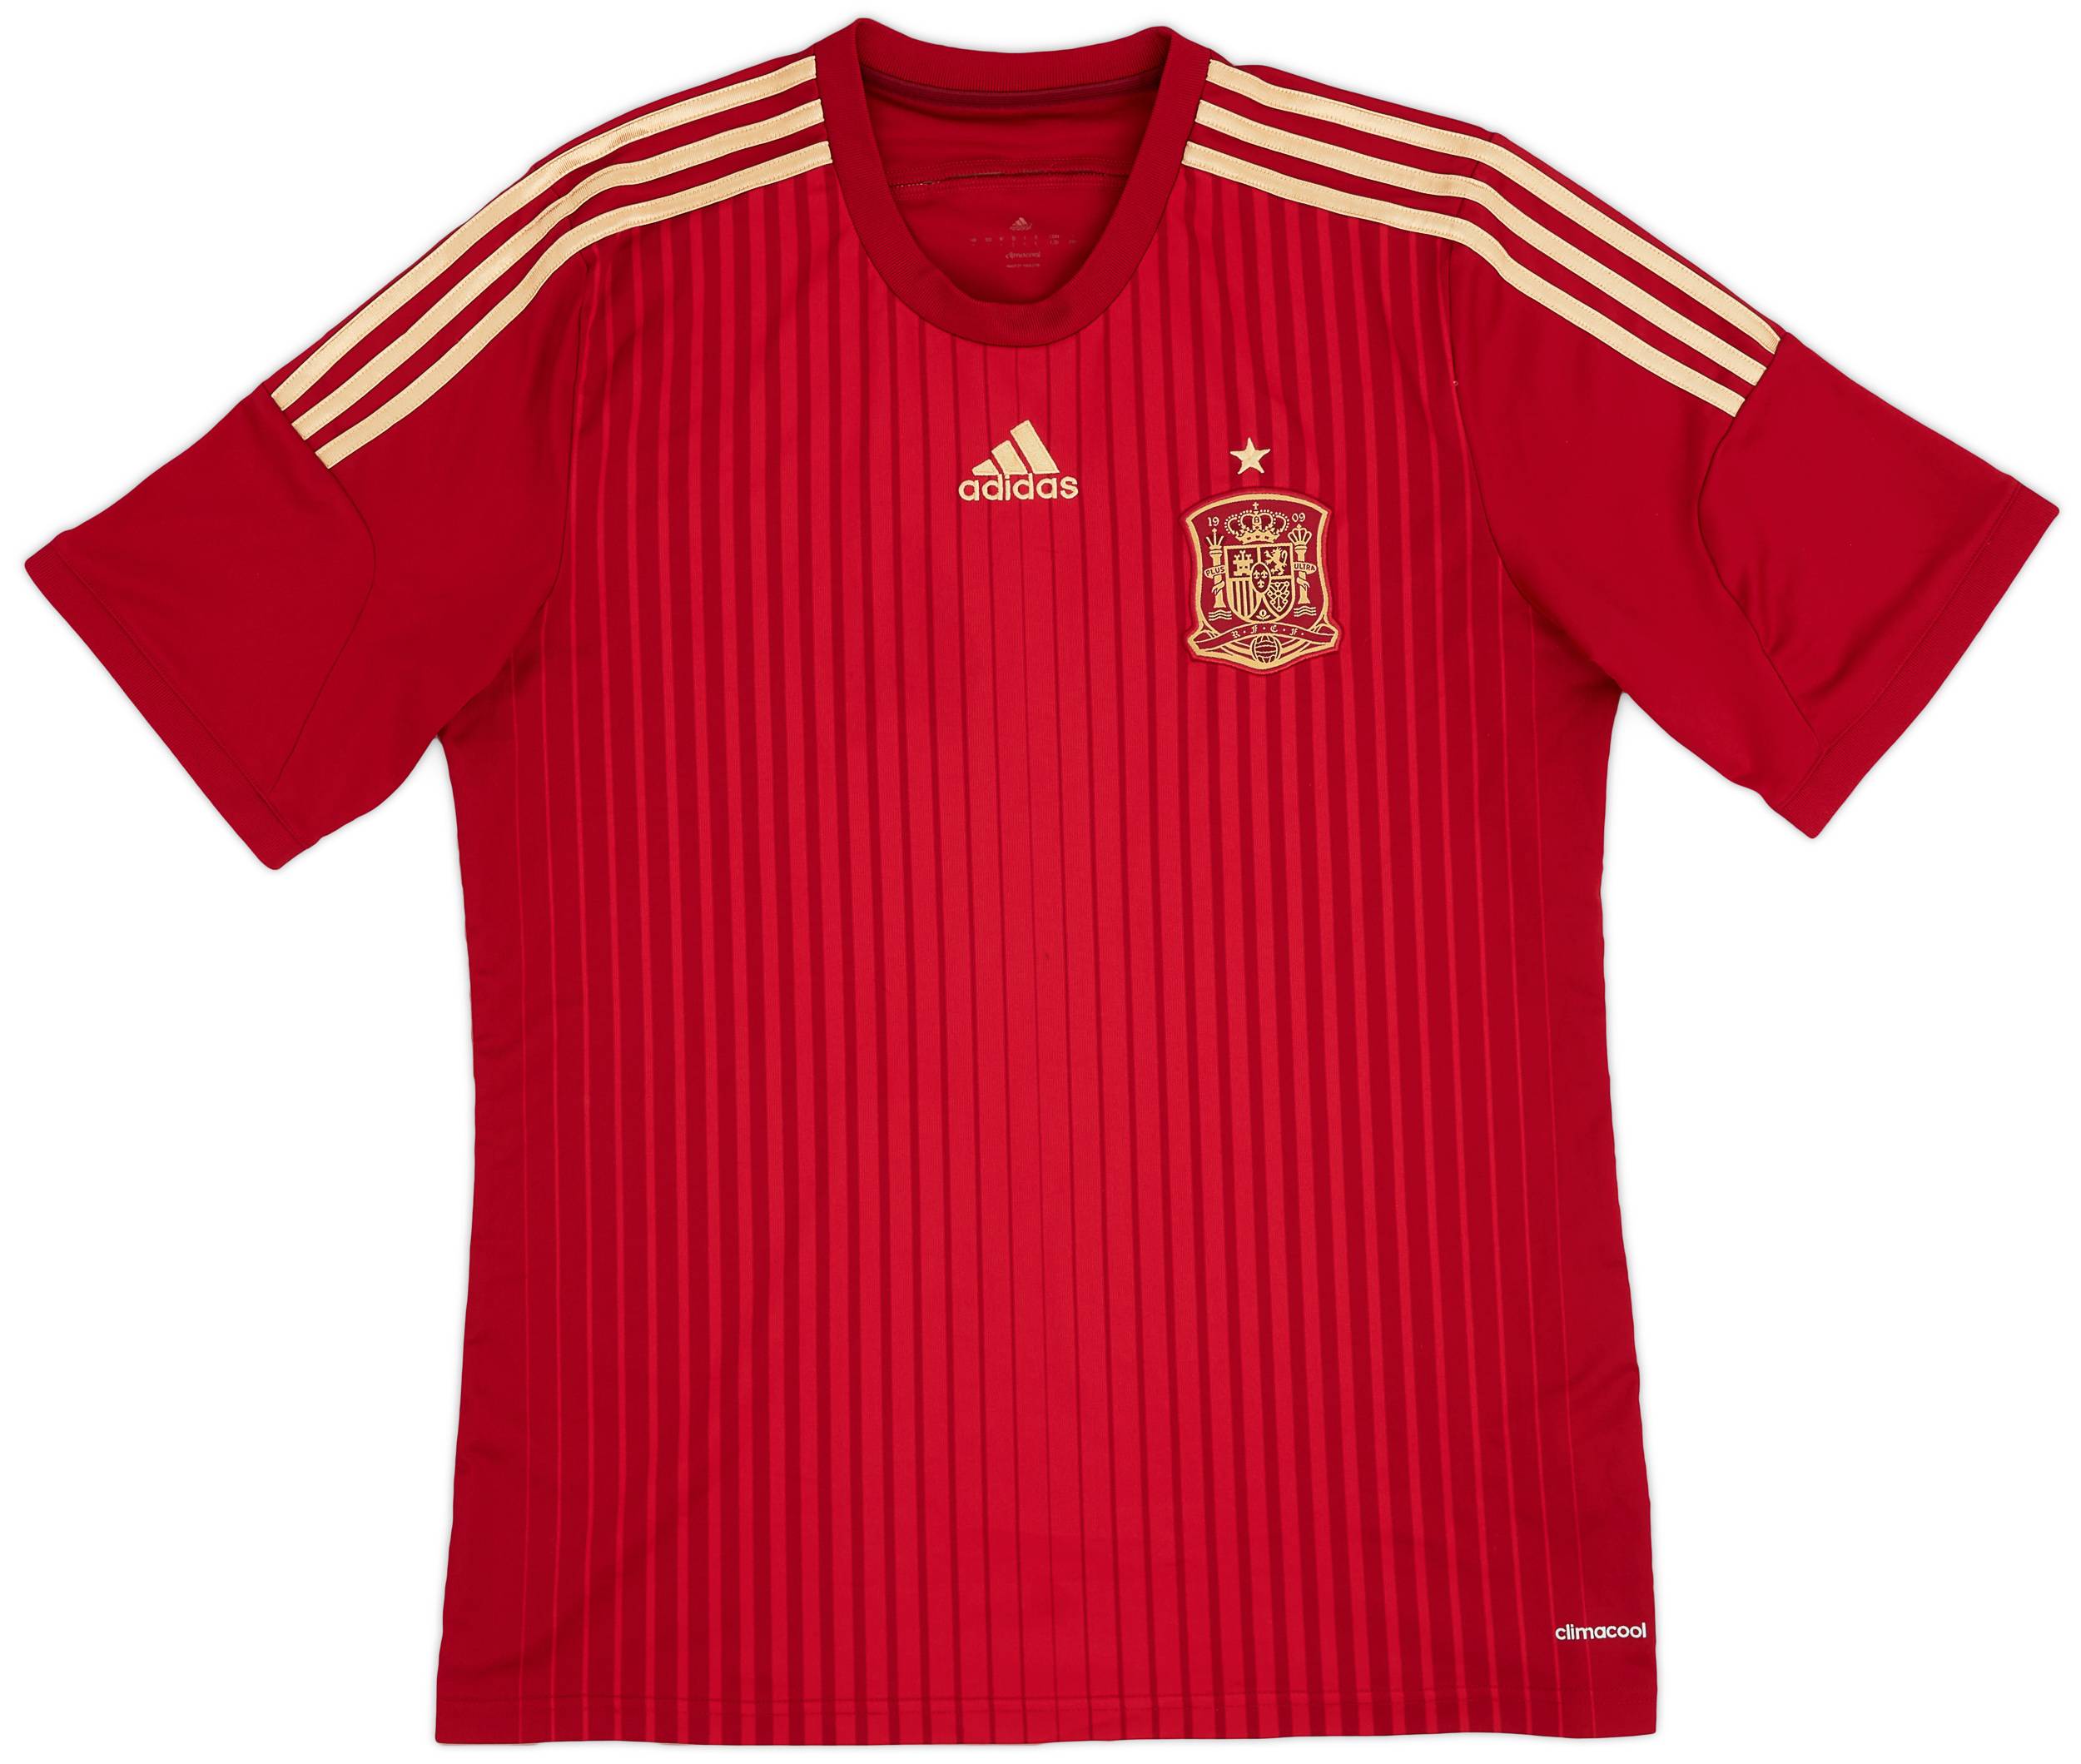 2013-15 Spain Home Shirt - 6/10 - (L)